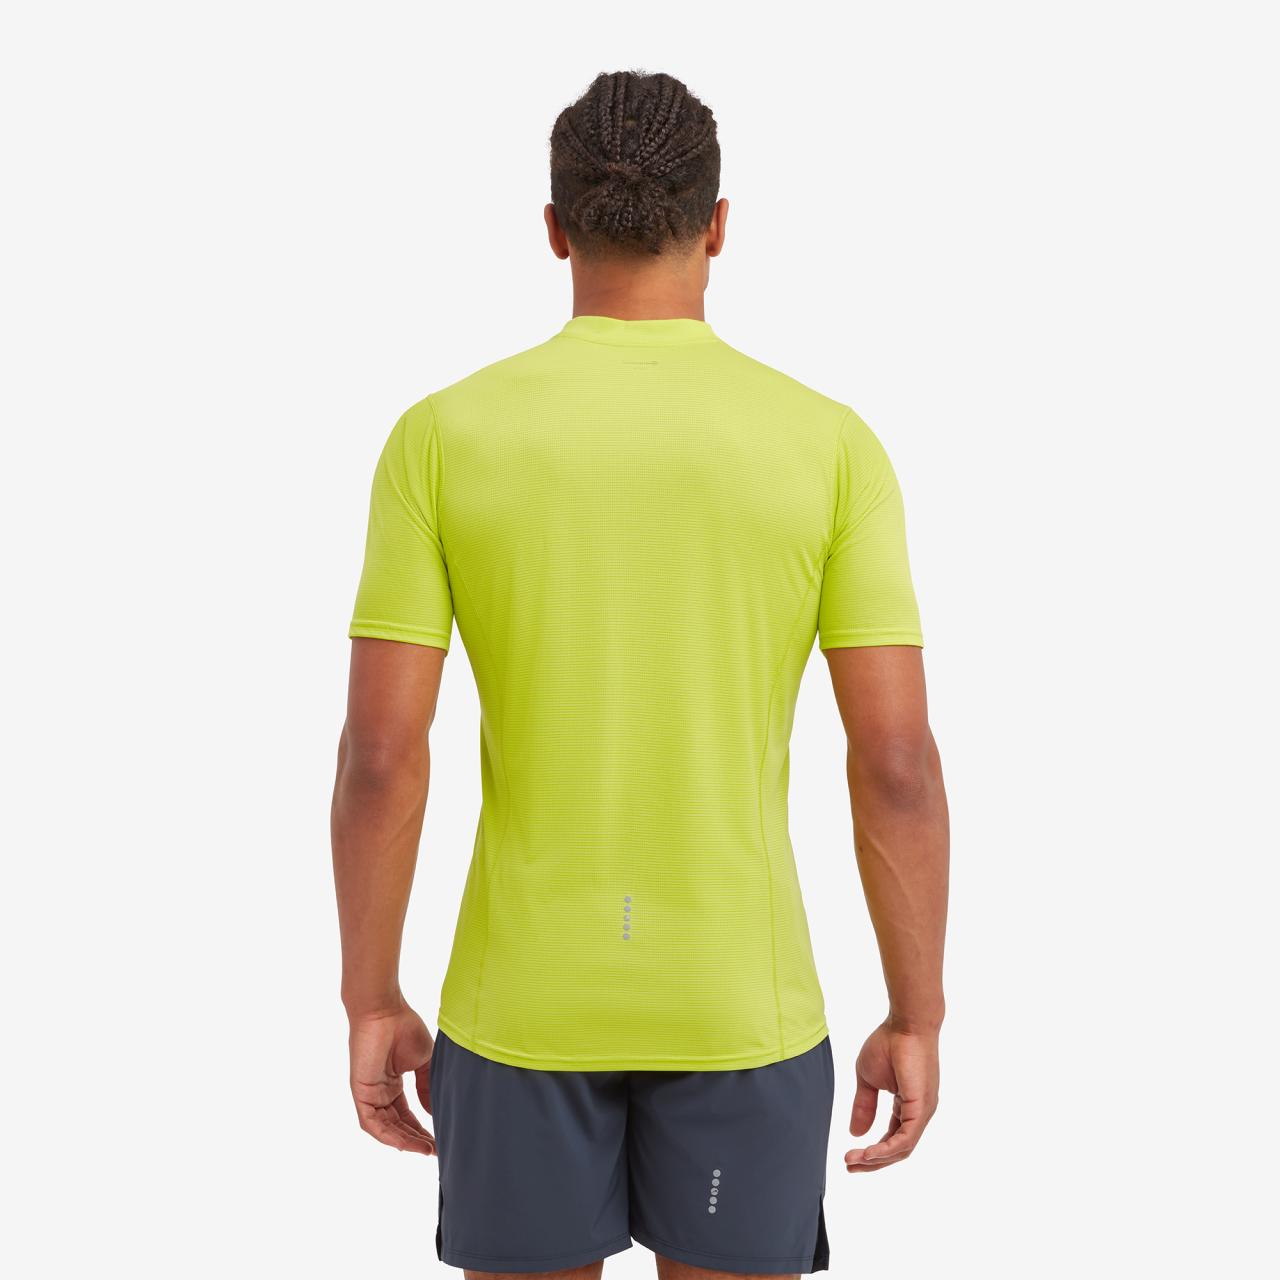 DART NANO ZIP T-SHIRT-CITRUS SPRING-M pánské triko žlutozelené